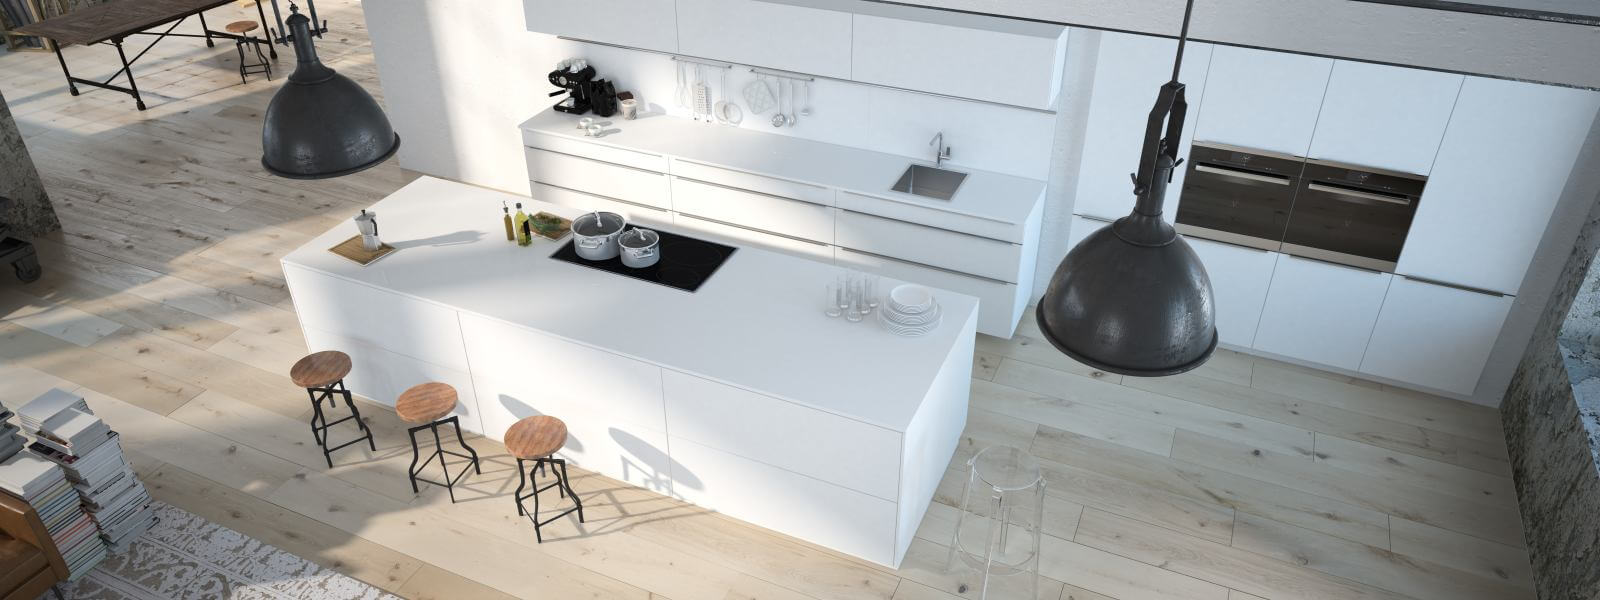 The modern kitchen interior design. 3d rendering